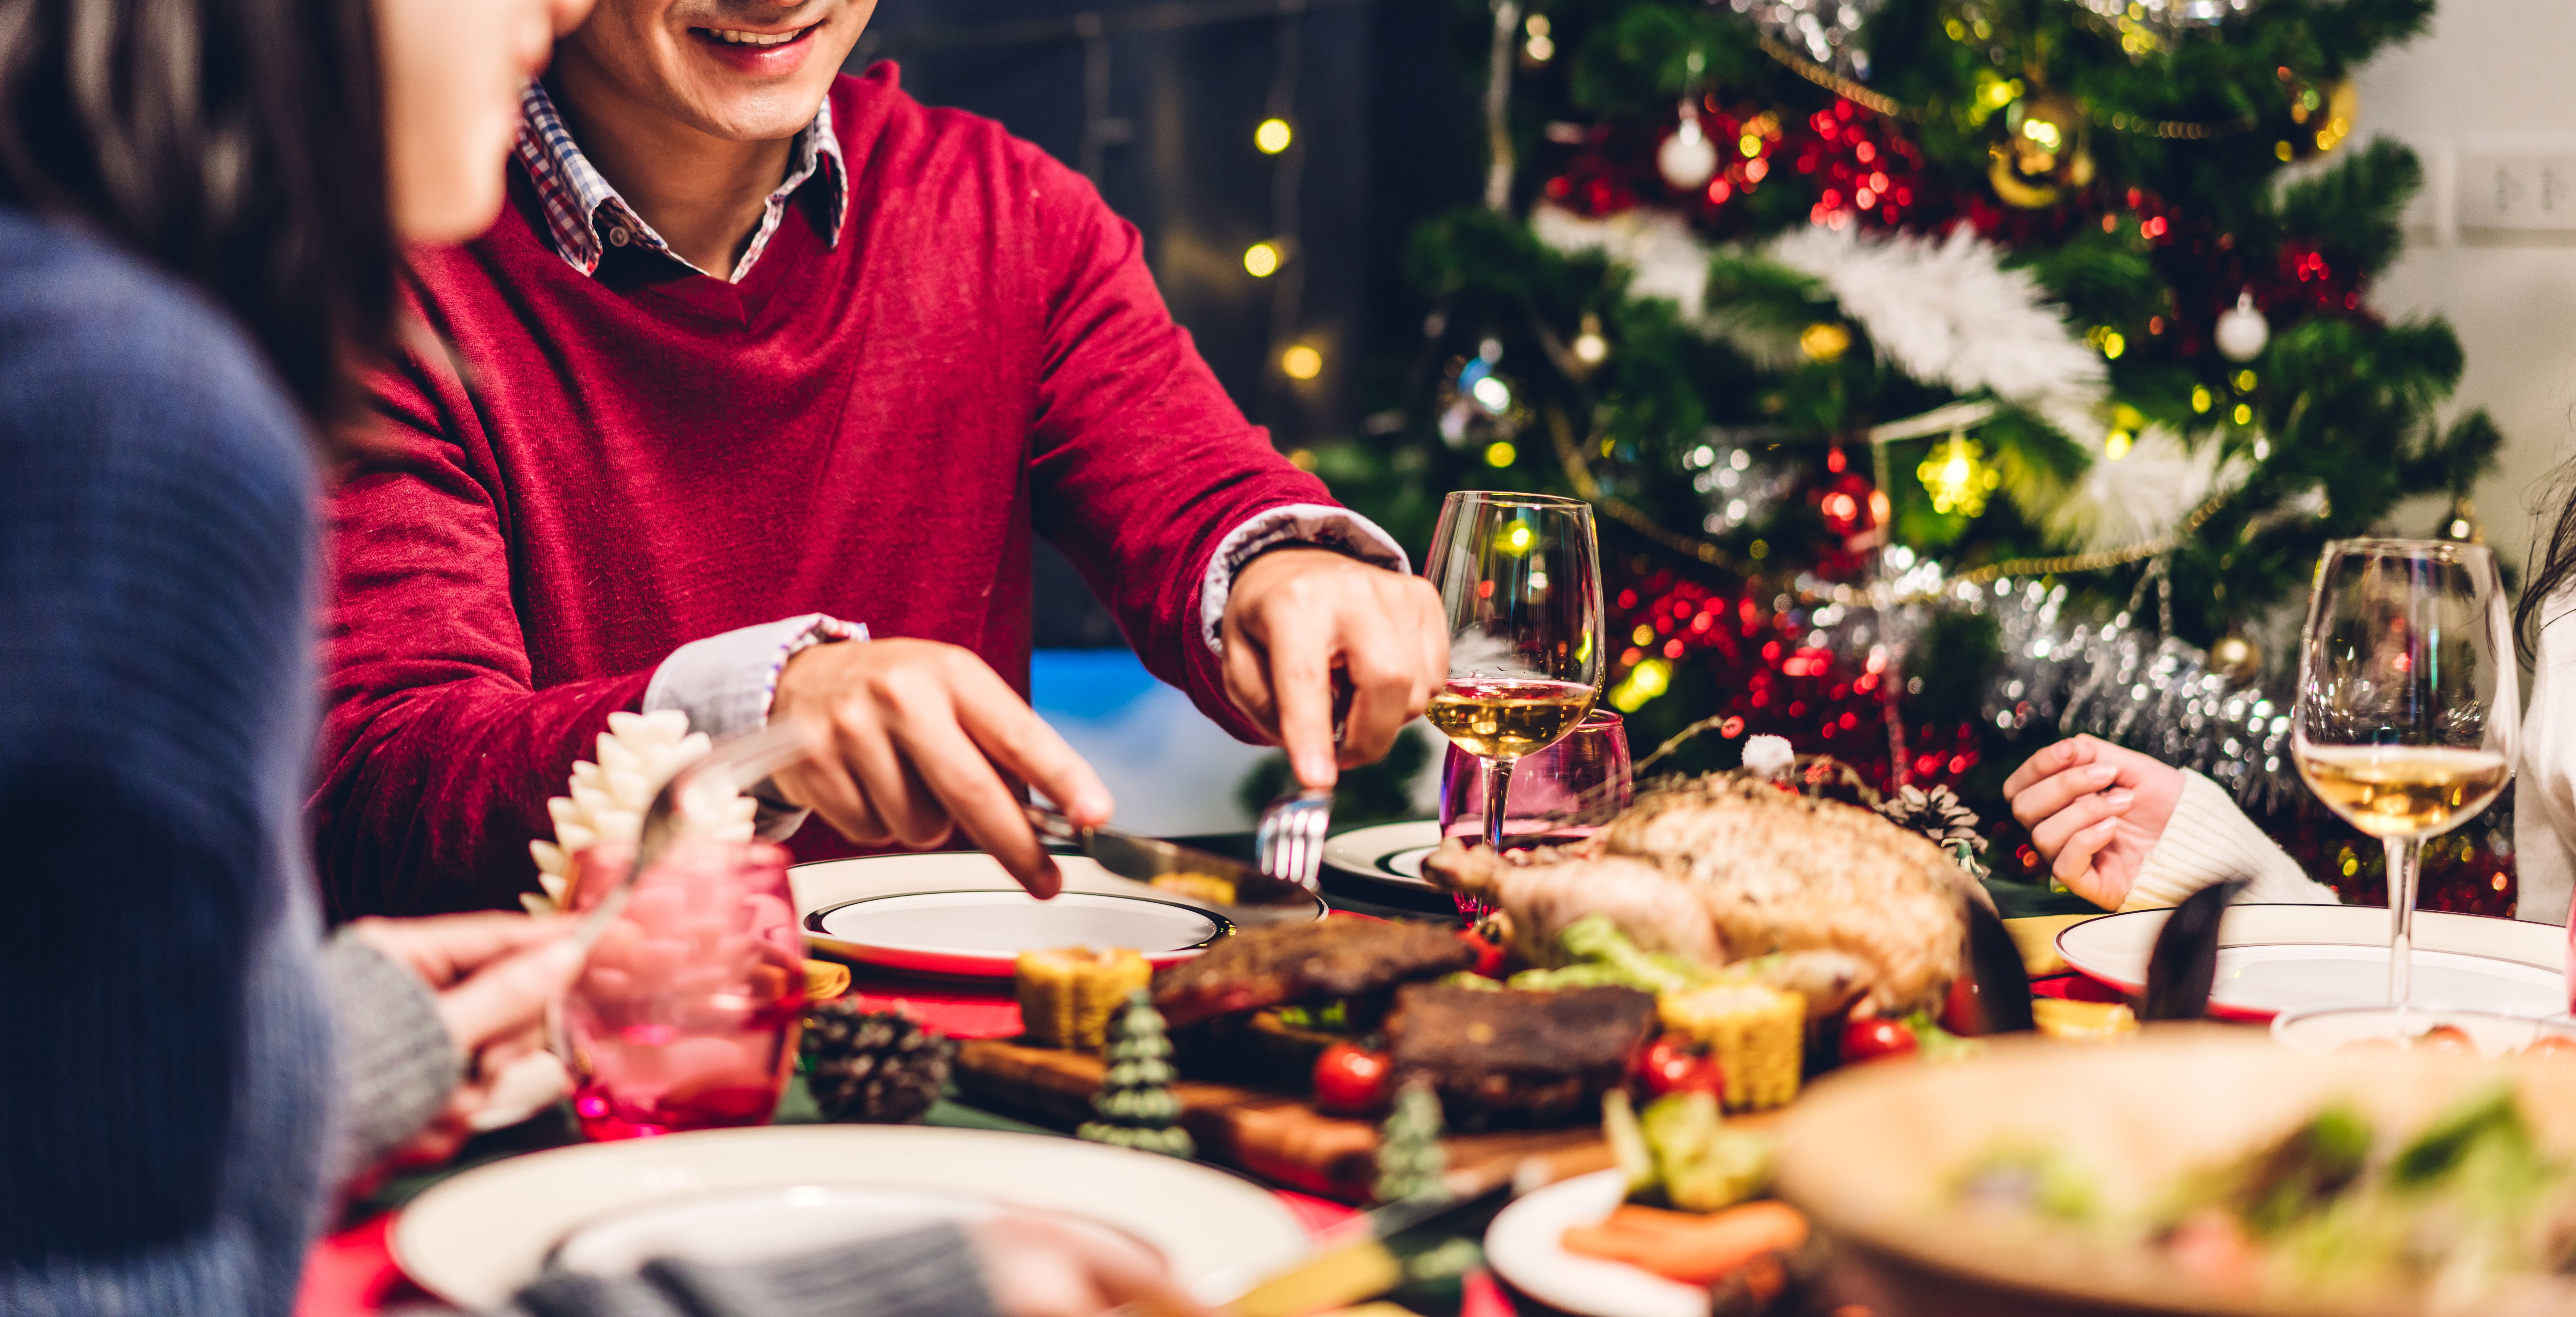 Mercadona te evita cocinar en Navidad: estos son los platos preparados que puedes encargar